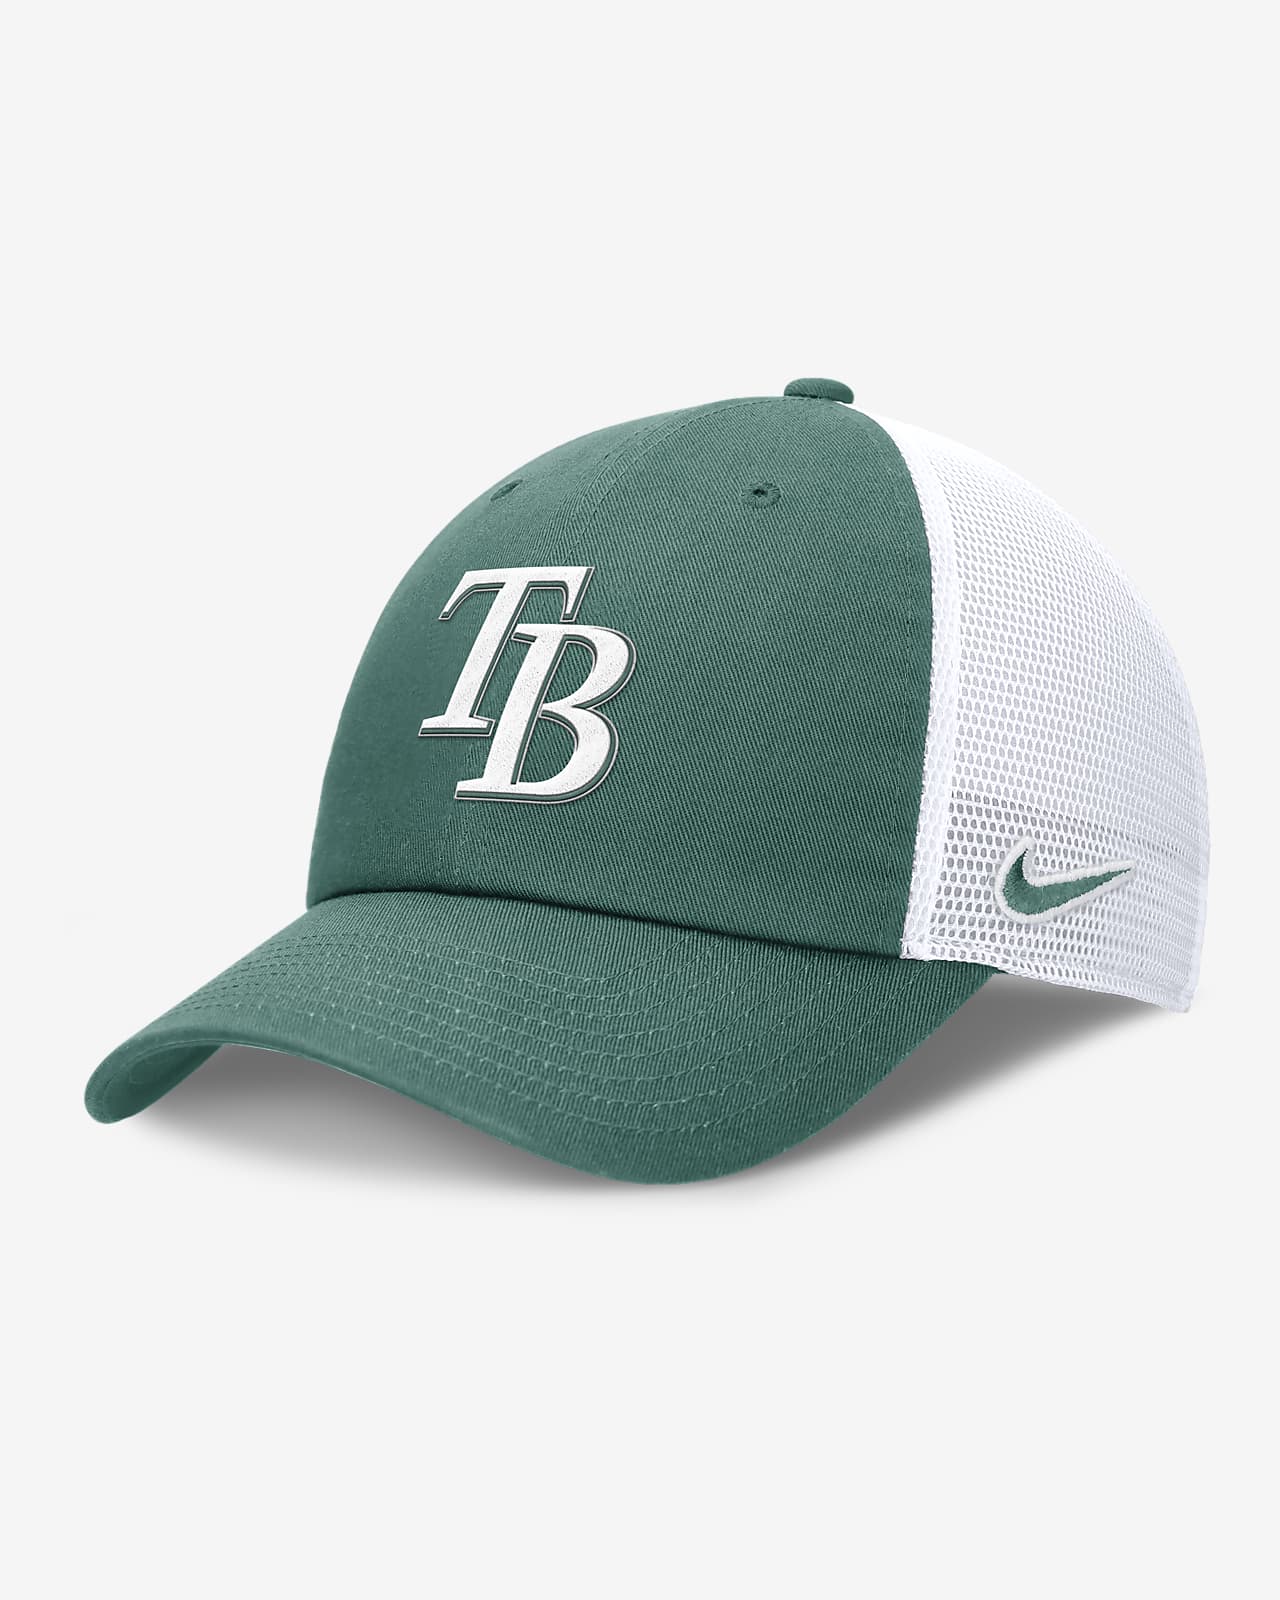 Gorra de rejilla Nike de la MLB ajustable para hombre Tampa Bay Rays Bicoastal Club